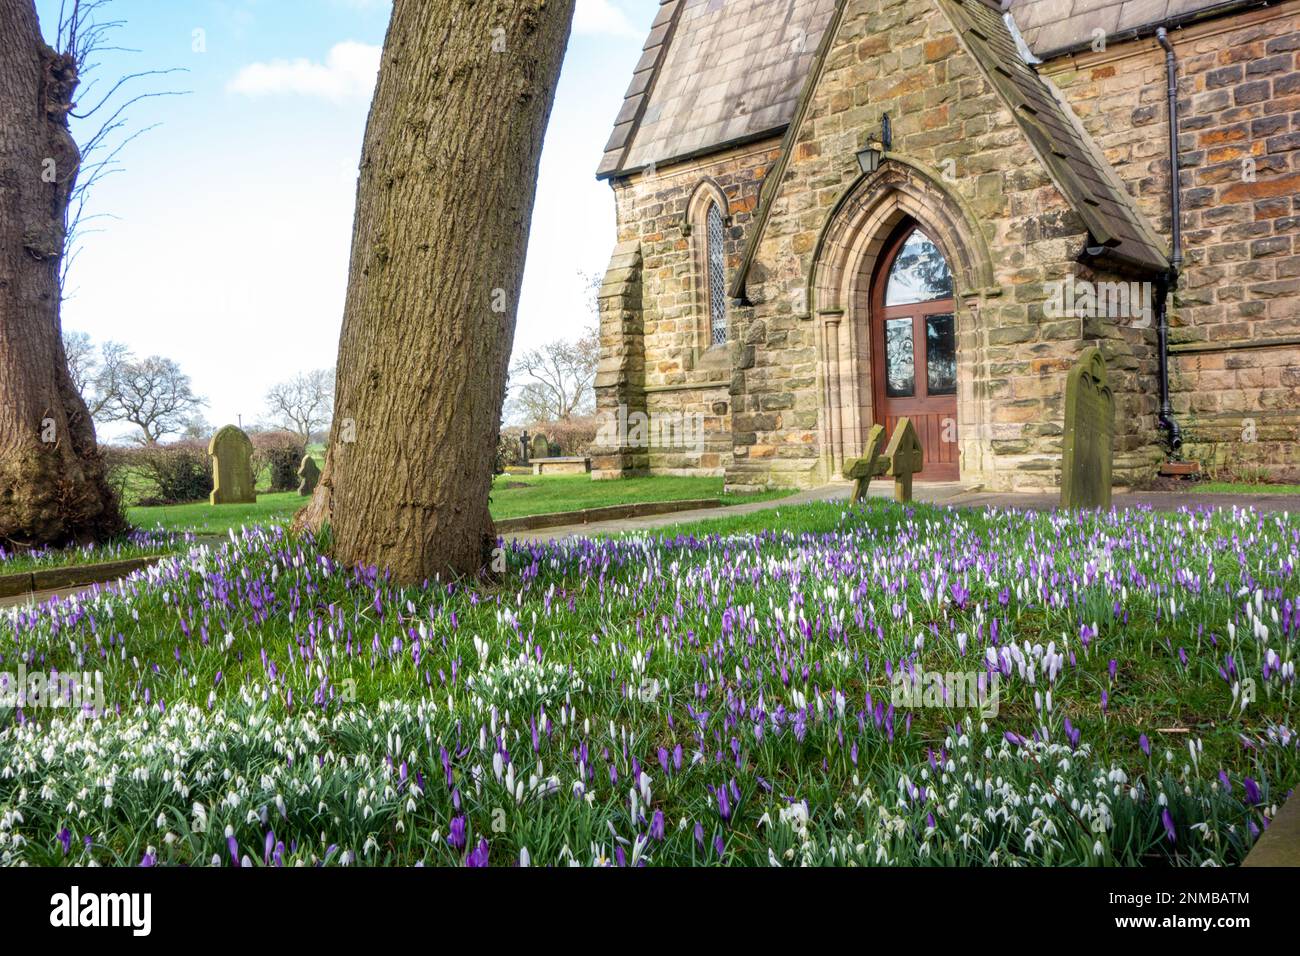 Les fleurs de Crocus poussent dans la cour de l'église parmi les pierres tombales de l'église paroissiale Saint-Jean-Baptiste de Smallwood Cheshire Angleterre Banque D'Images